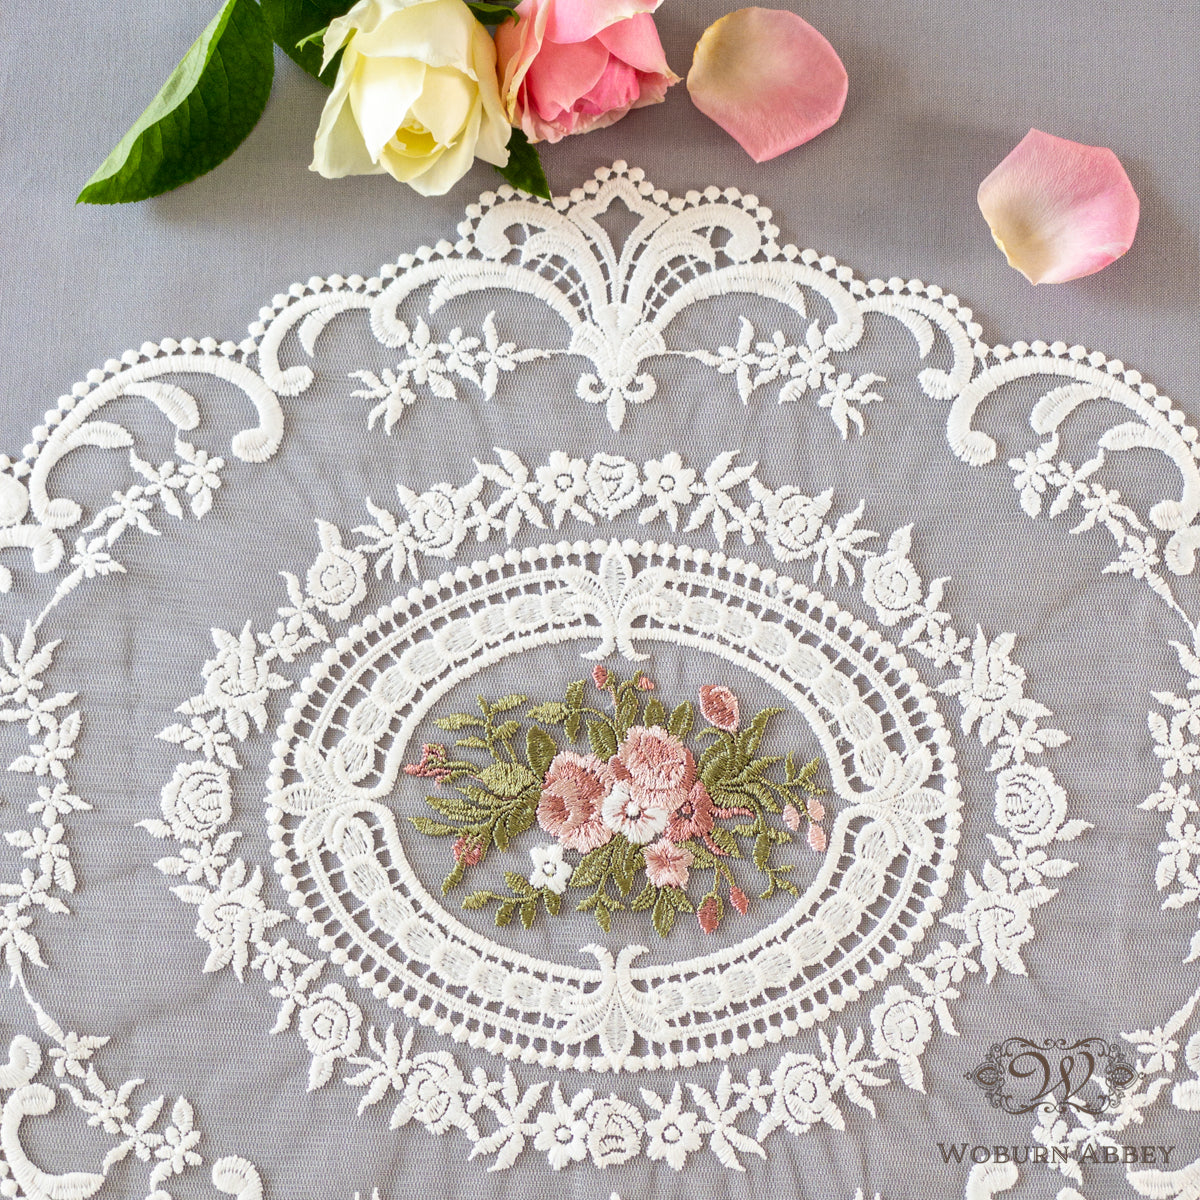 テーブルセンター レース 布 小 刺繍 白 ホワイト おしゃれ 丸 楕円 ドイリー 花柄 バラ フランスアンティーク風 – Woburn Abbey